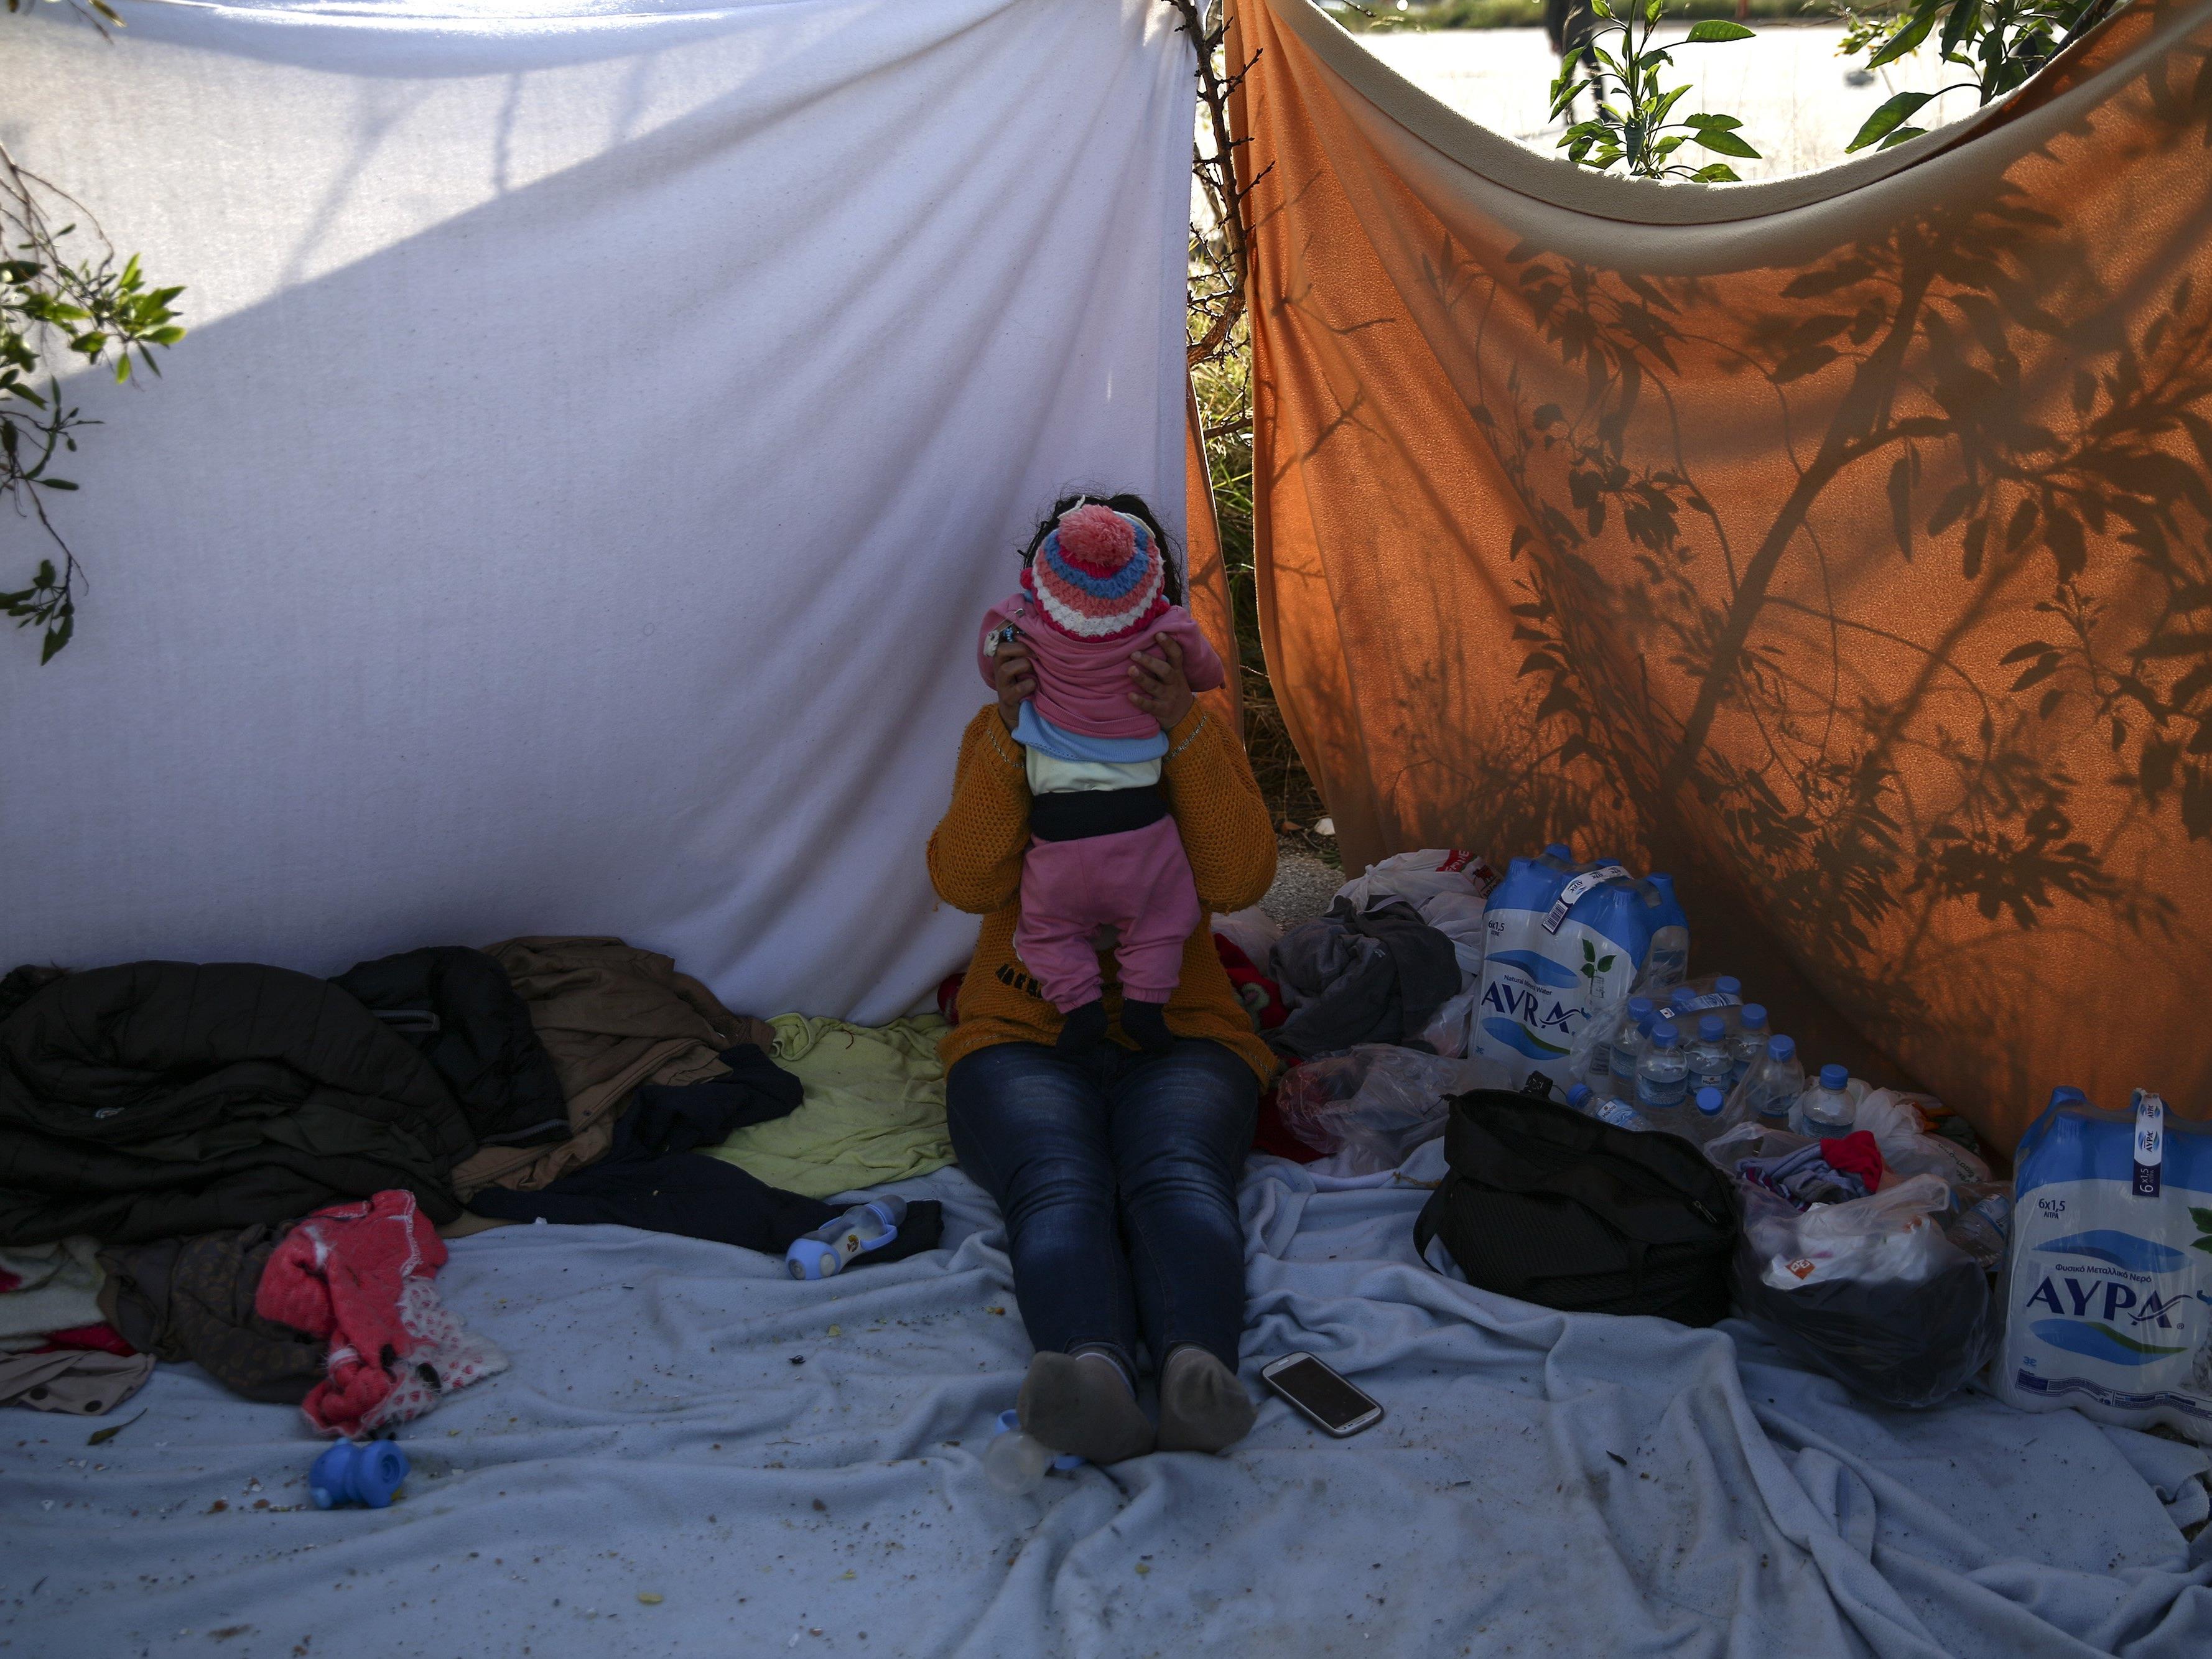 Nothilfe in Flüchtlingskrise: EU-Kommission will Plan am Mittwoch vorstellen